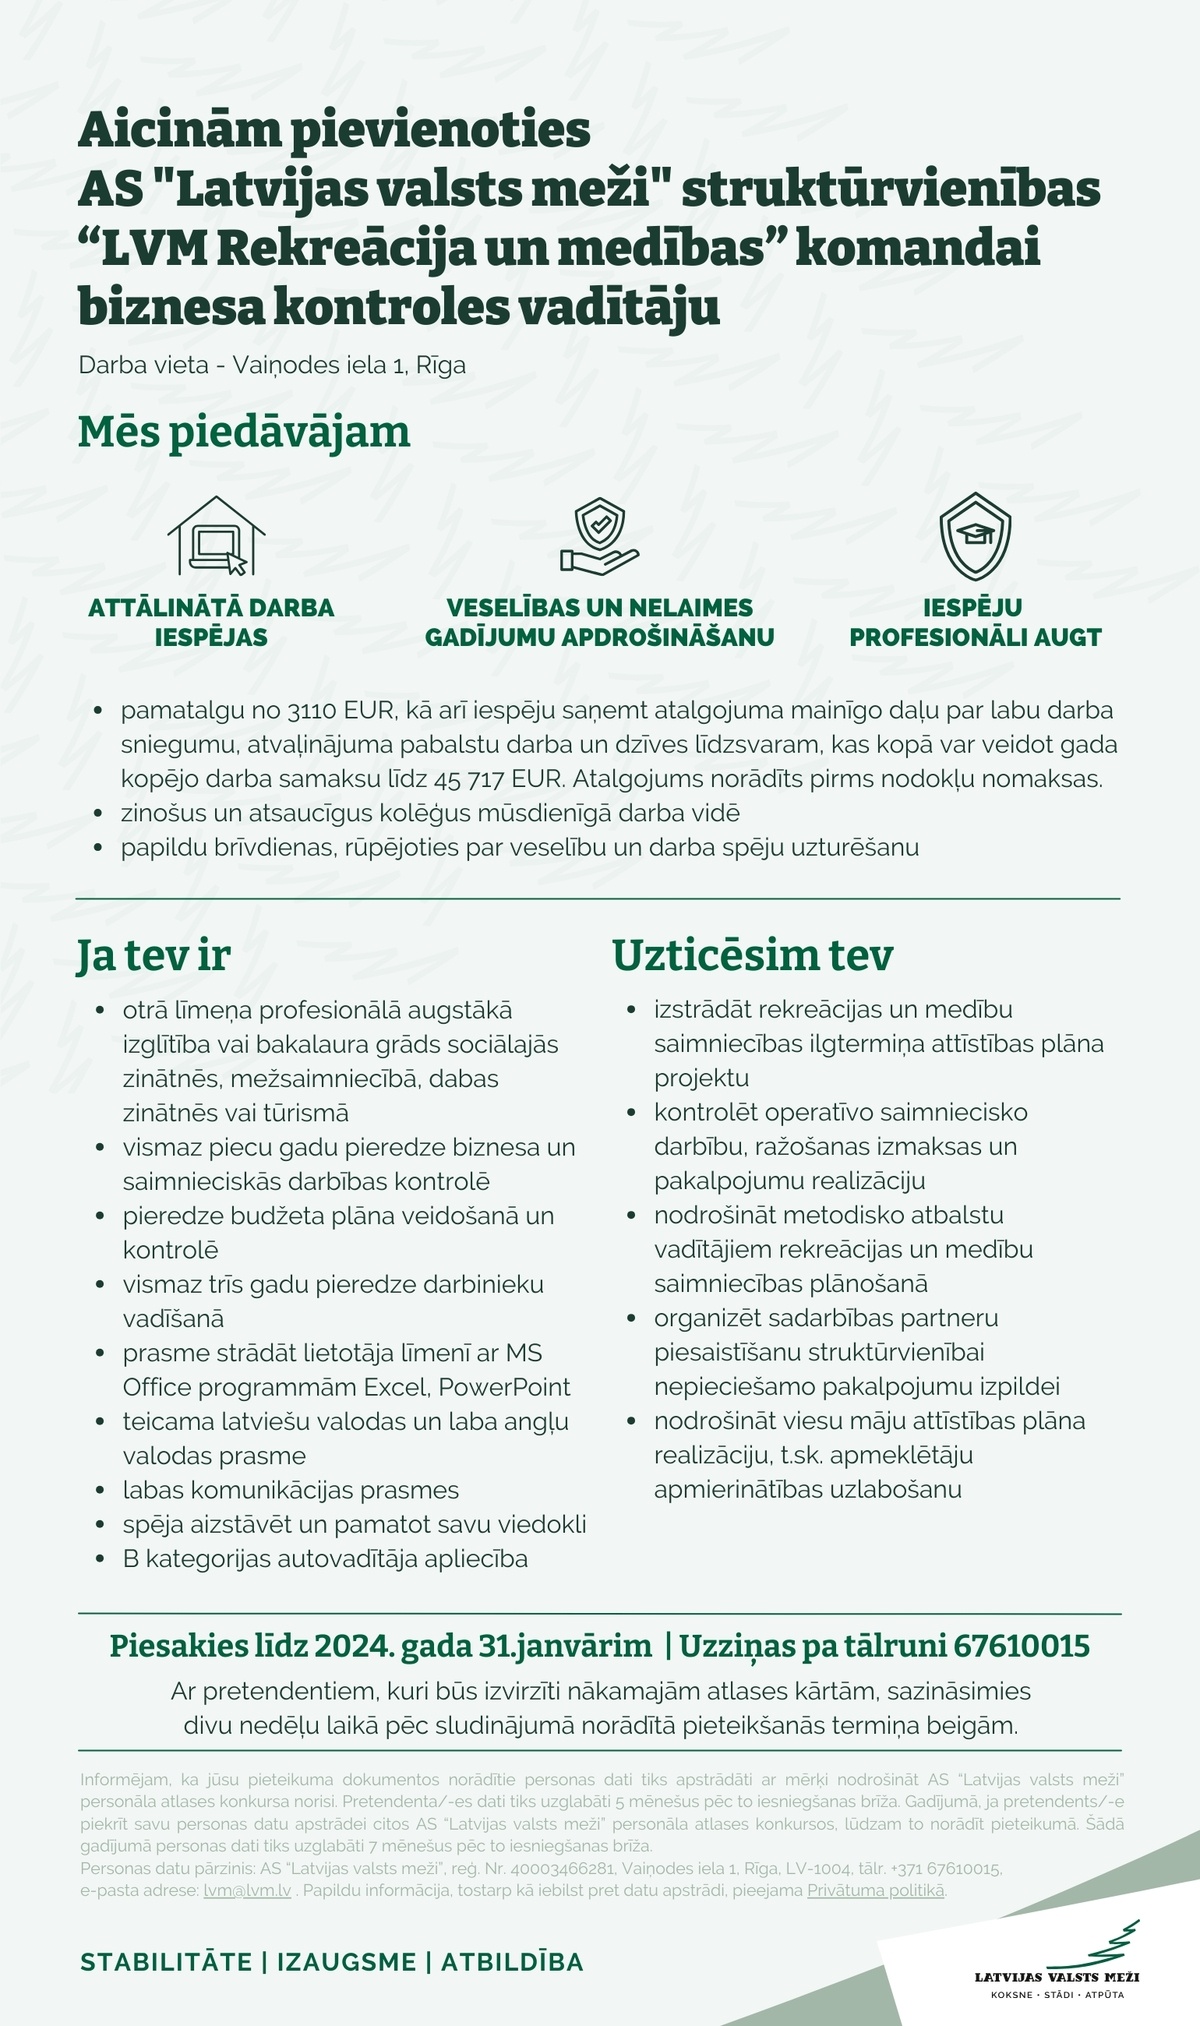 Latvijas valsts meži, AS Biznesa kontroles vadītājs/-a